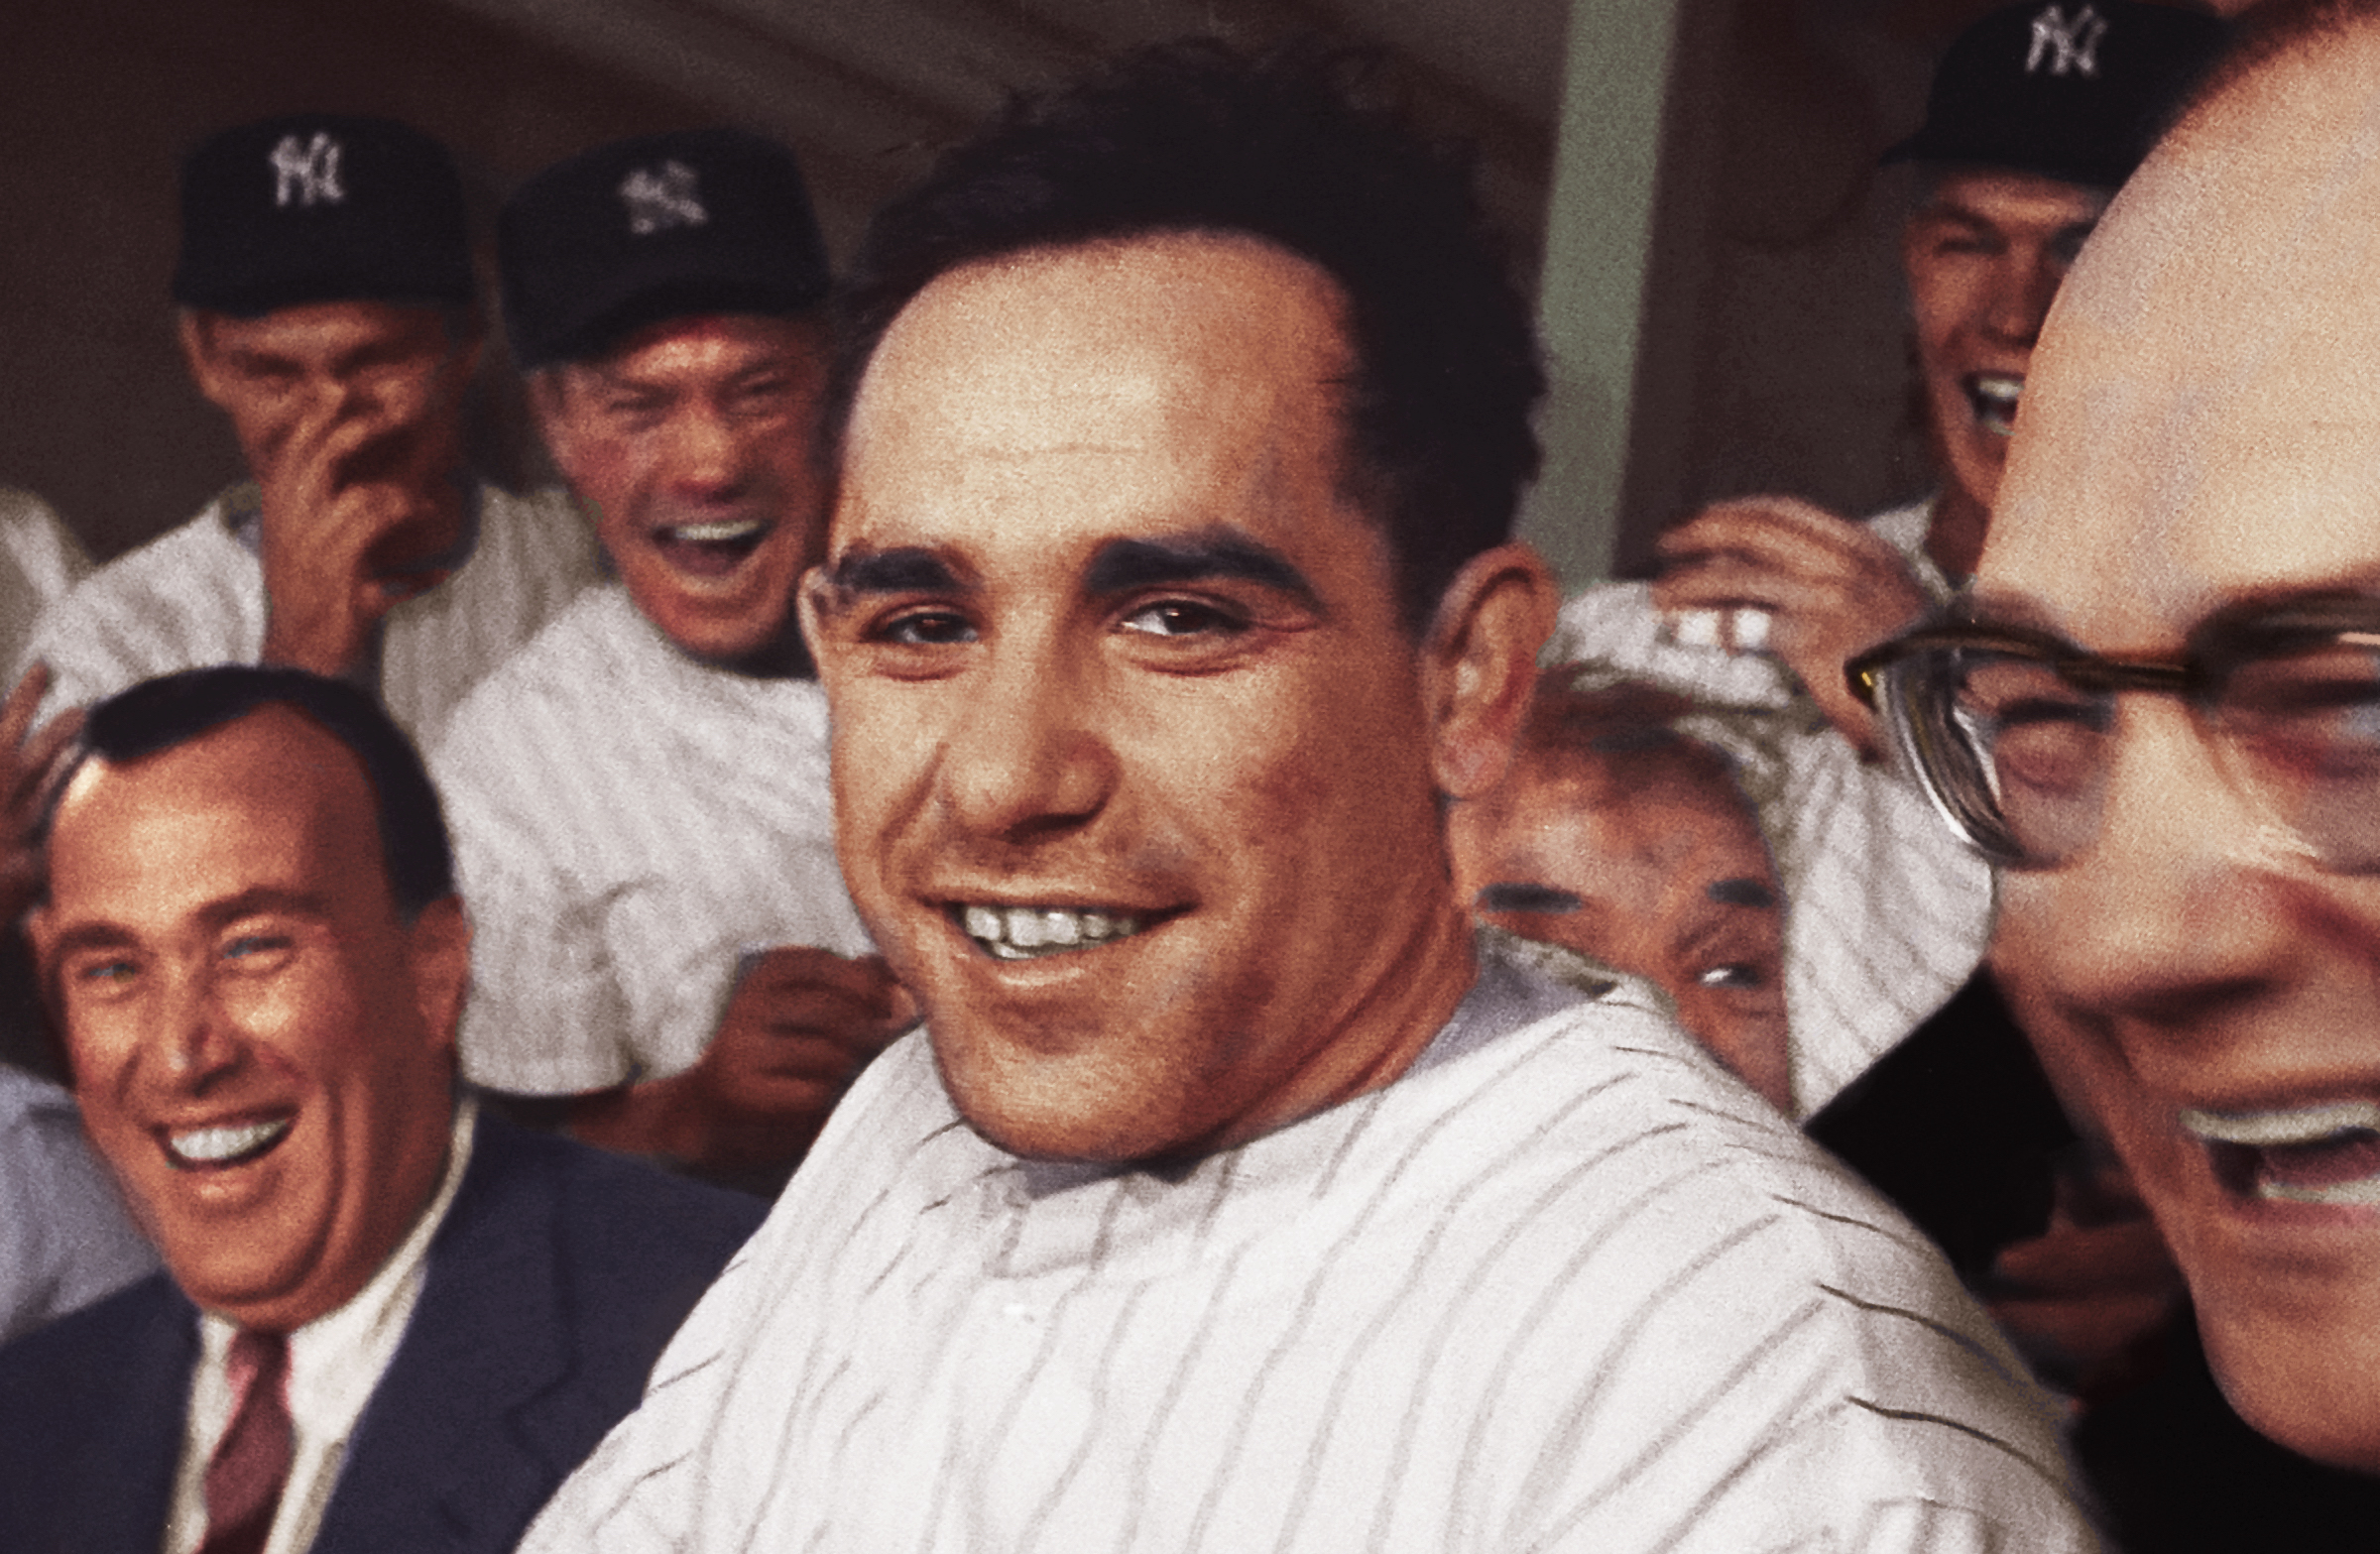 Carmen Berra, Wife of Yankee Legend Yogi Berra, Dies